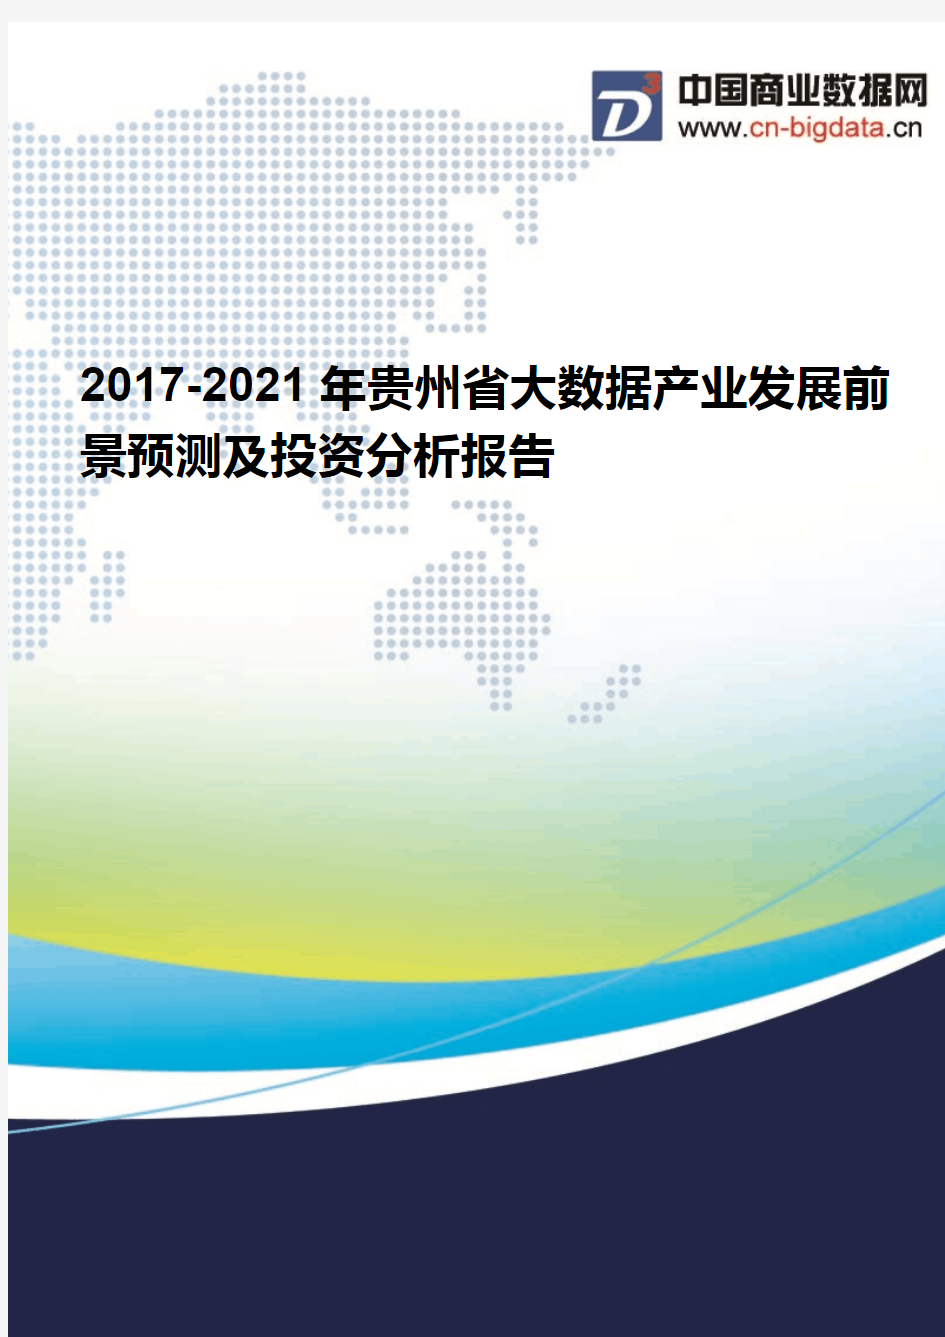 2017-2021年贵州省大数据产业发展前景预测及投资分析报告